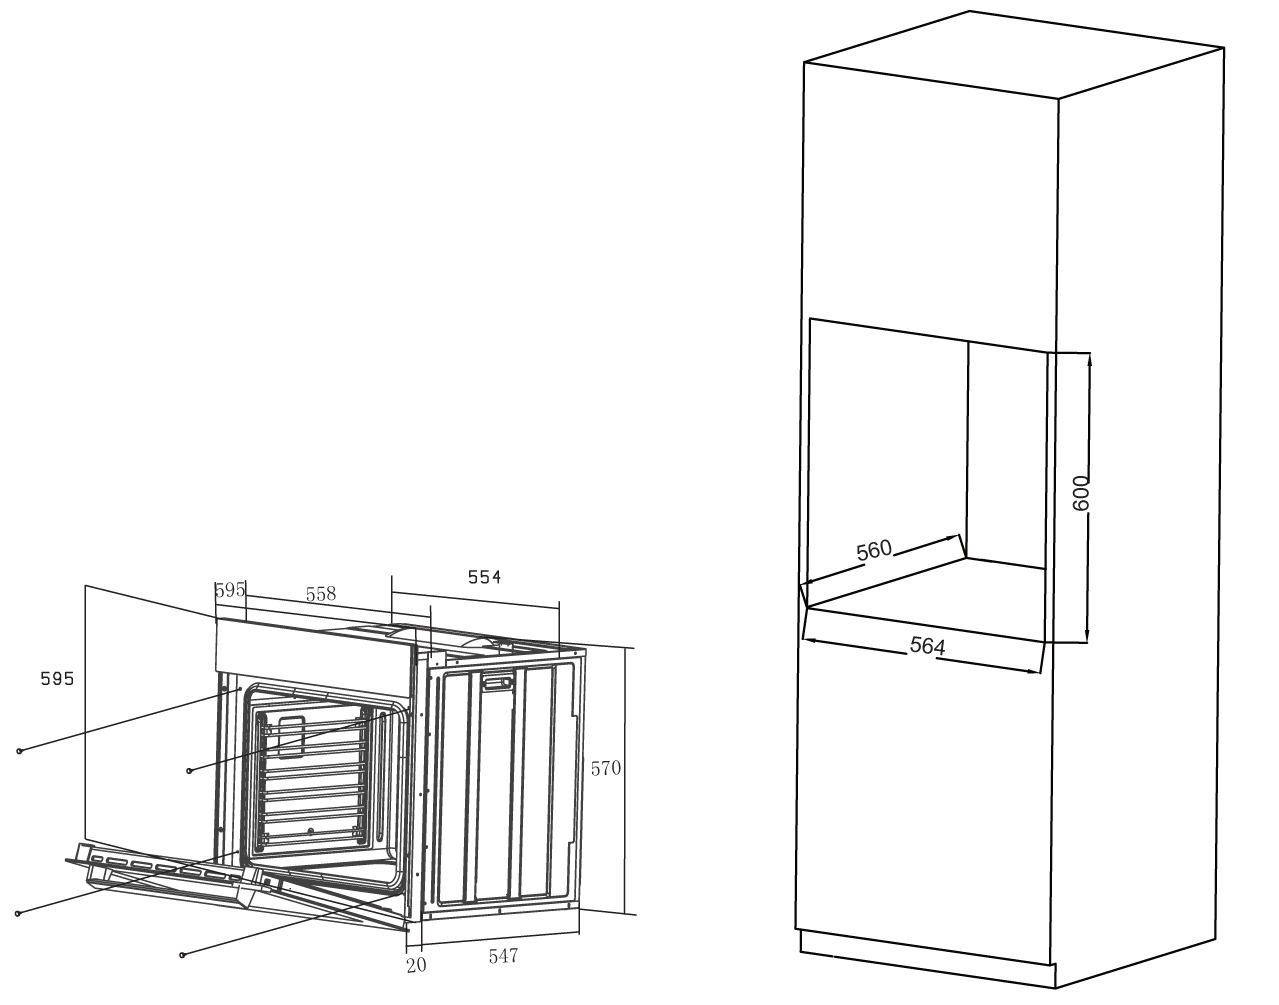 Духовой шкаф Haier HOX-T11HGB